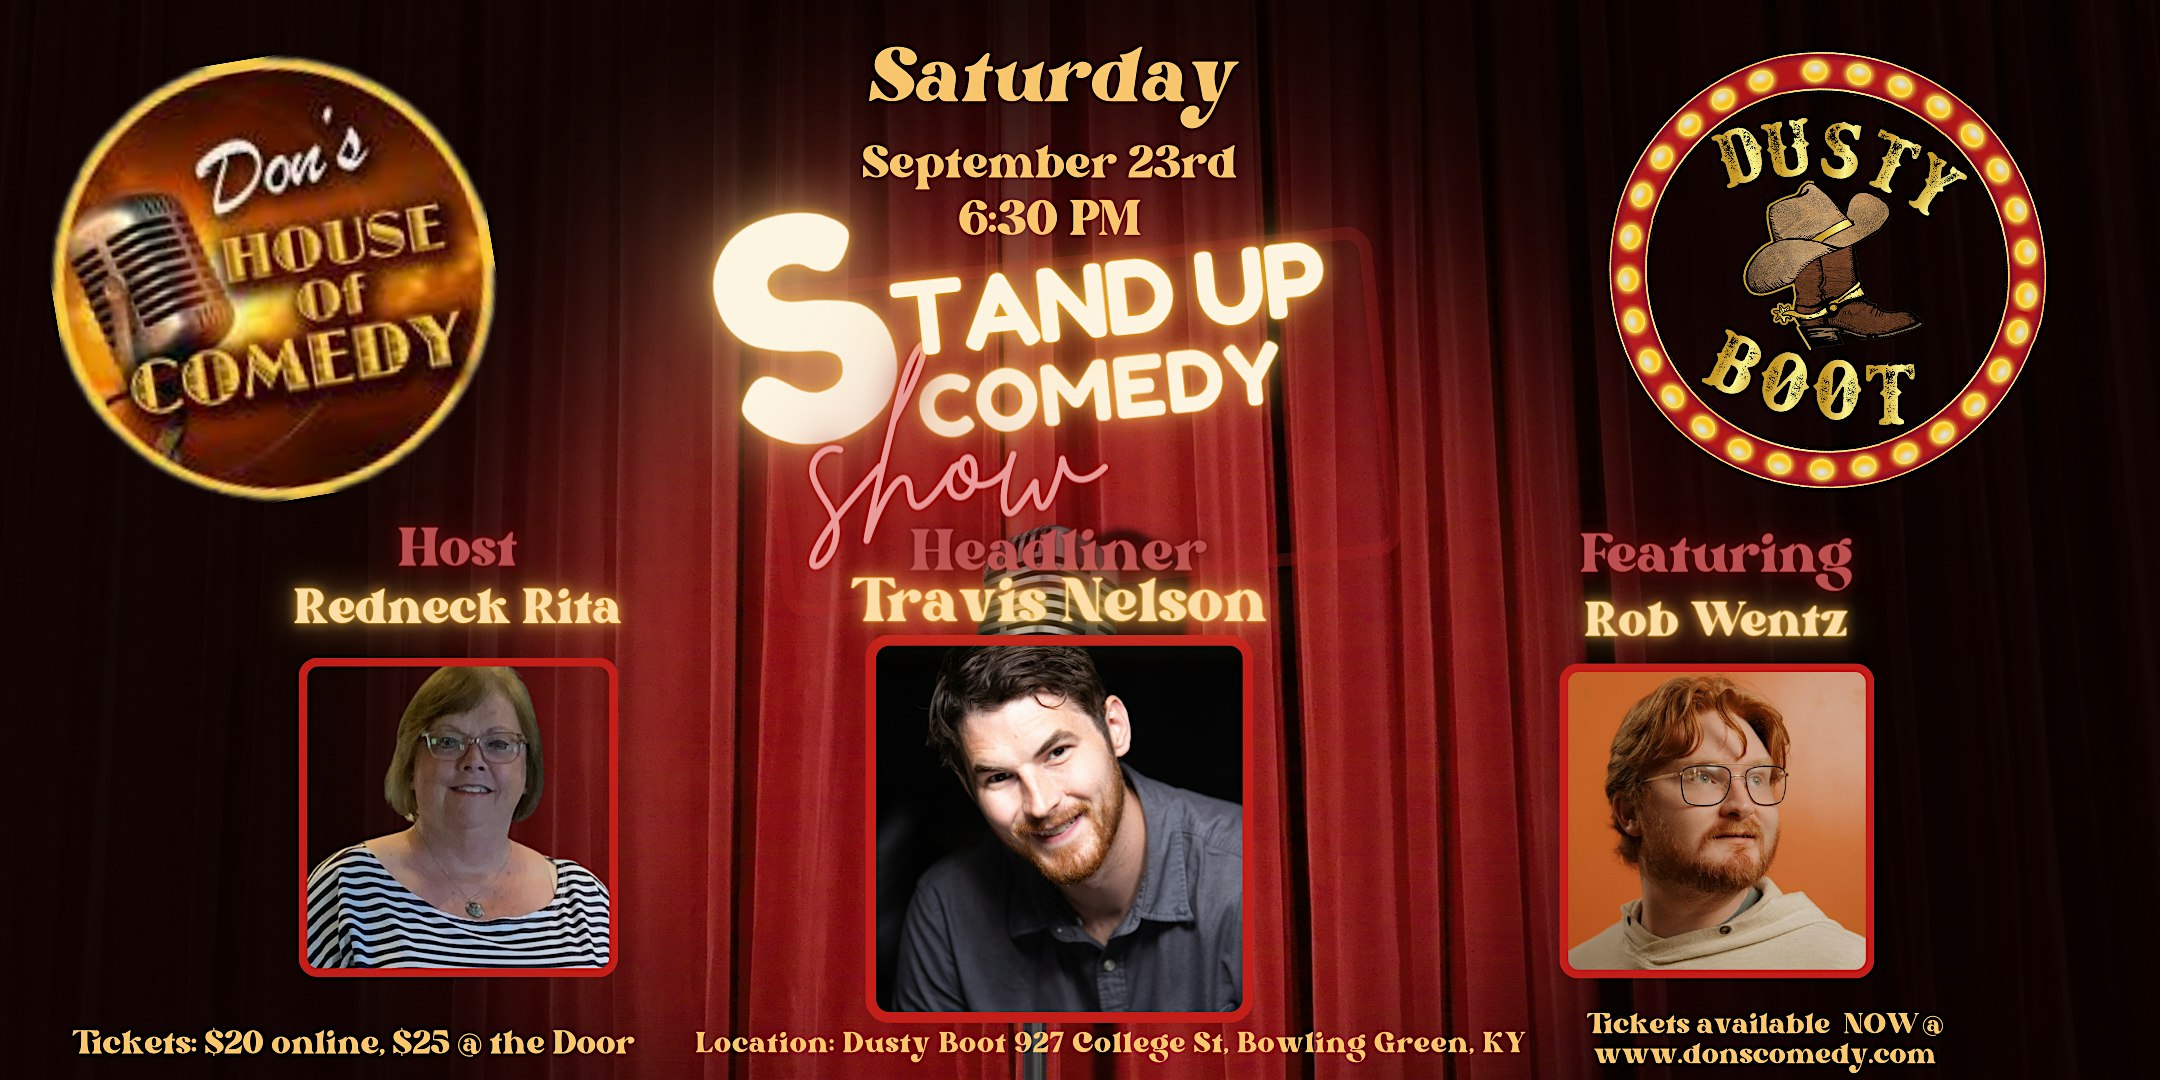 Standup Comedy Show: Headliner Travis Nelson, Featuring Rob Wentz, Host Redneck Rita